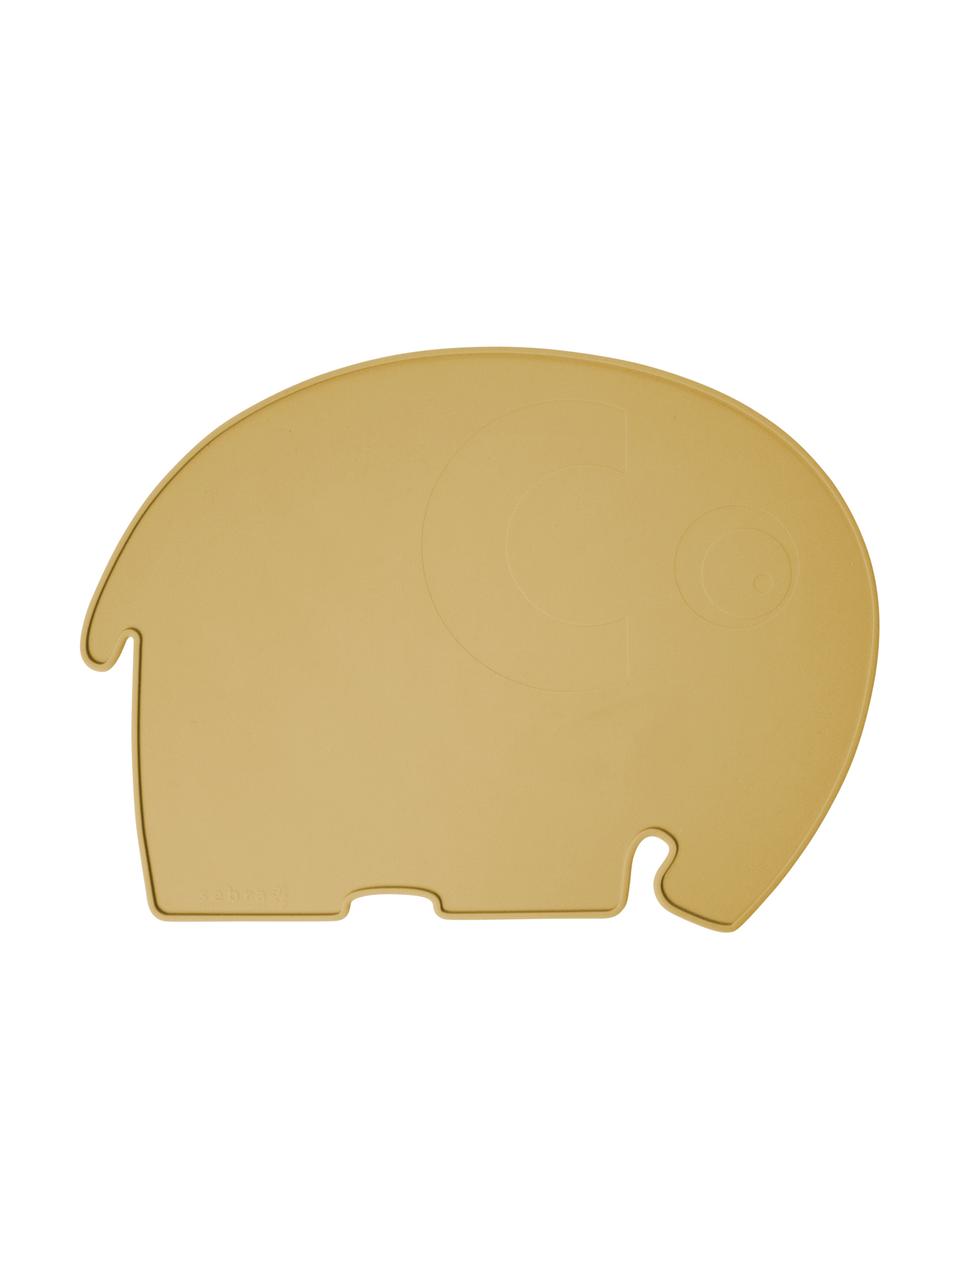 Tovaglietta elefantino in silicone Fanto, Silicone, senza BPA, Giallo, Larg. 43 x Alt. 33 cm